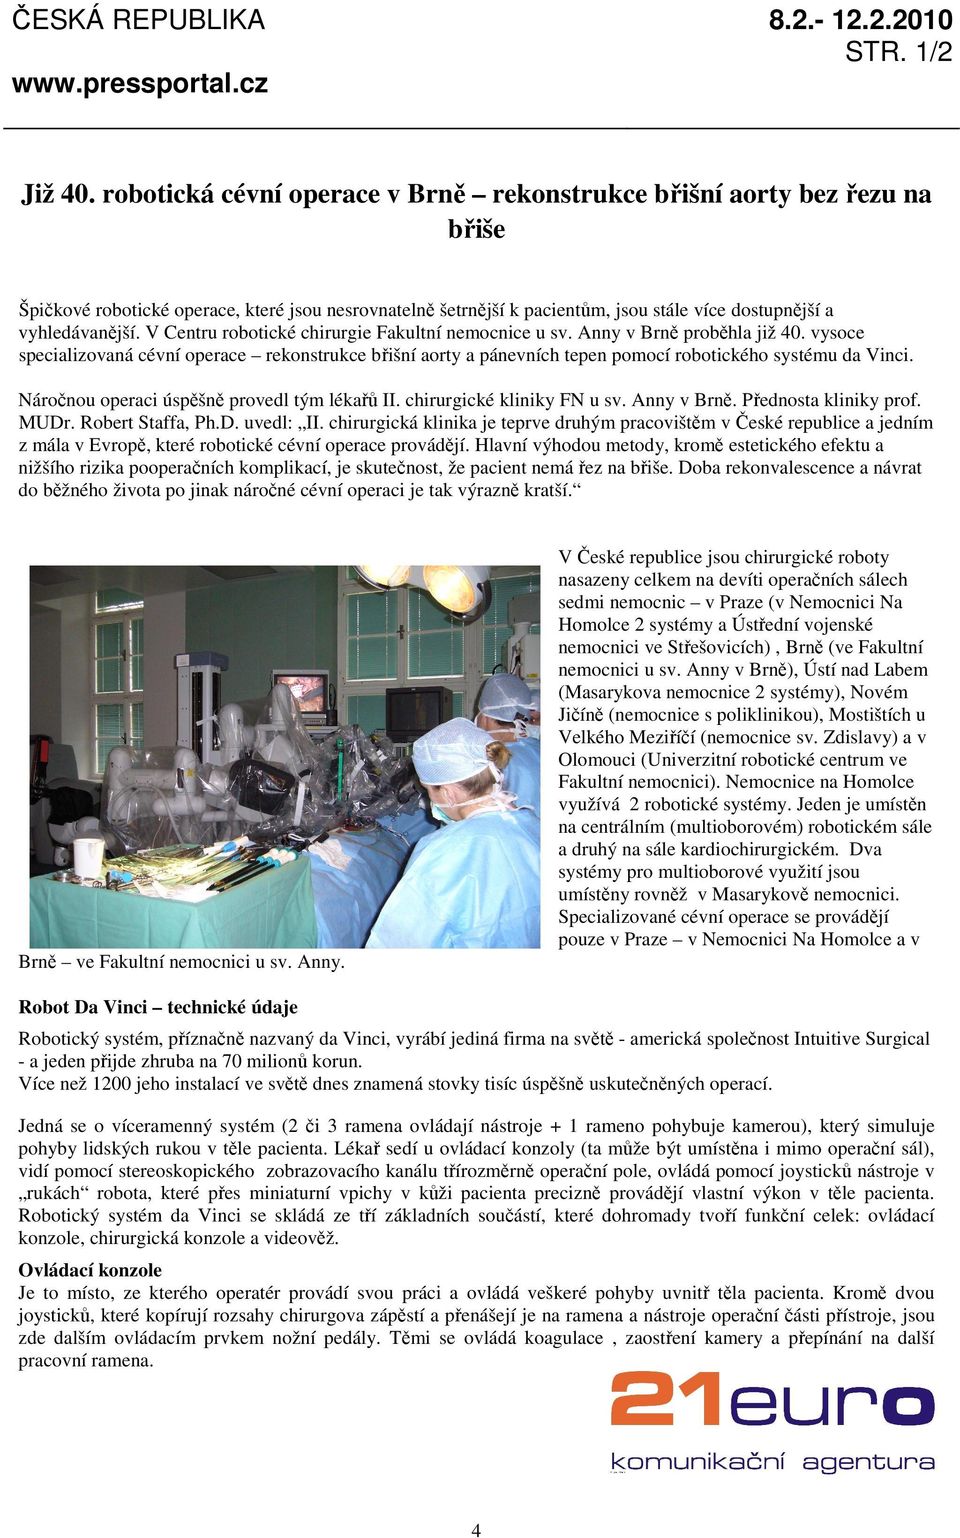 V Centru robotické chirurgie Fakultní nemocnice u sv. Anny v Brně proběhla již 40. vysoce specializovaná cévní operace rekonstrukce břišní aorty a pánevních tepen pomocí robotického systému da Vinci.